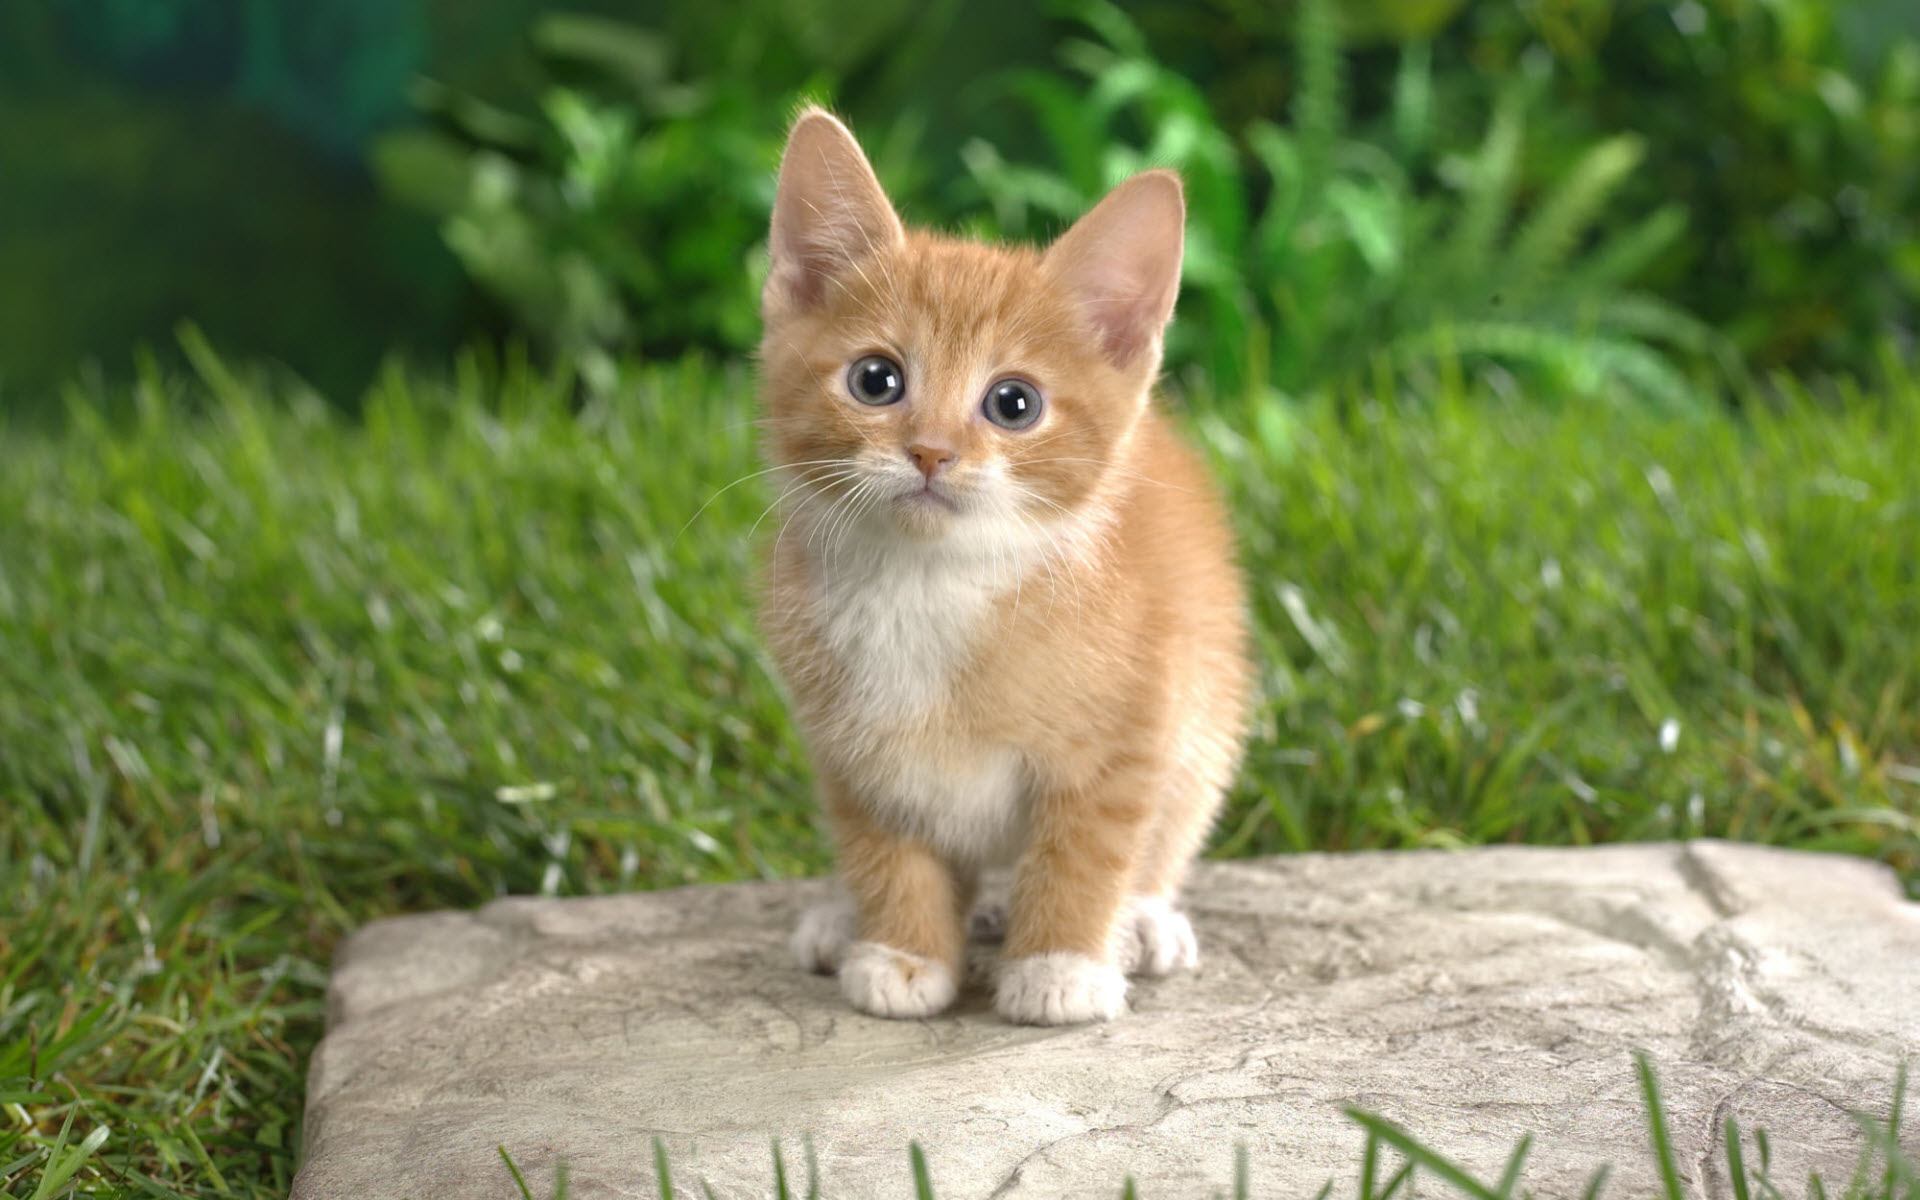 Curious Tabby Kitten9280012966 - Curious Tabby Kitten - Tabby, Kitten, Dogs, Curious